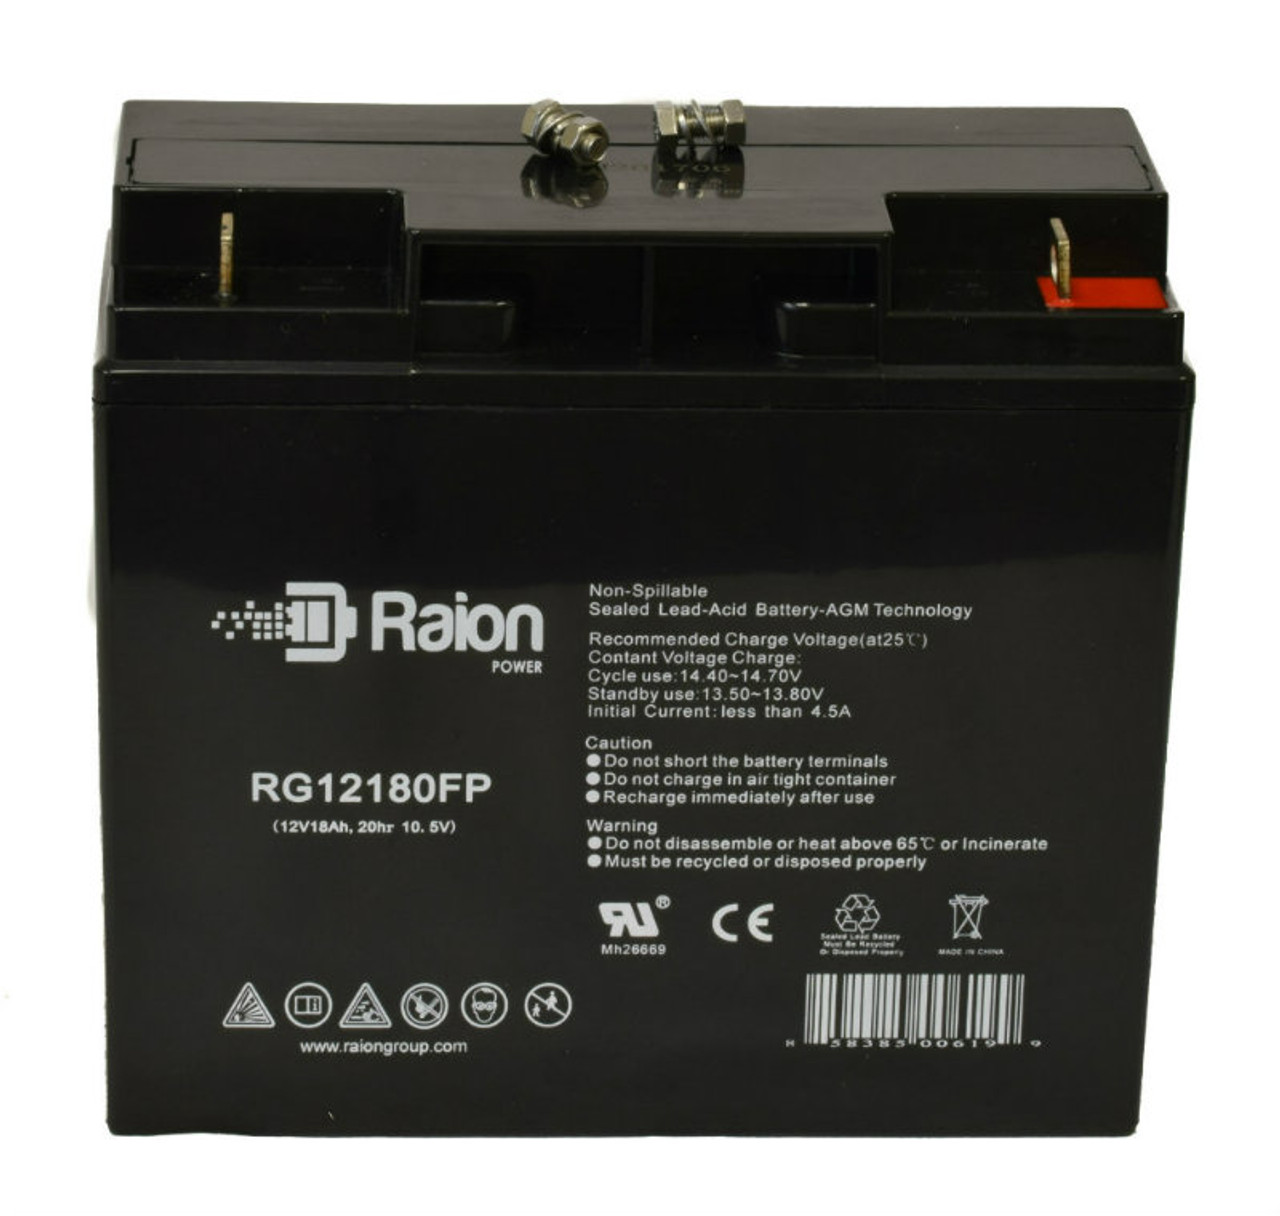 Raion Power RG12180FP 12V 18Ah Lead Acid Battery for HKBil 6FM17